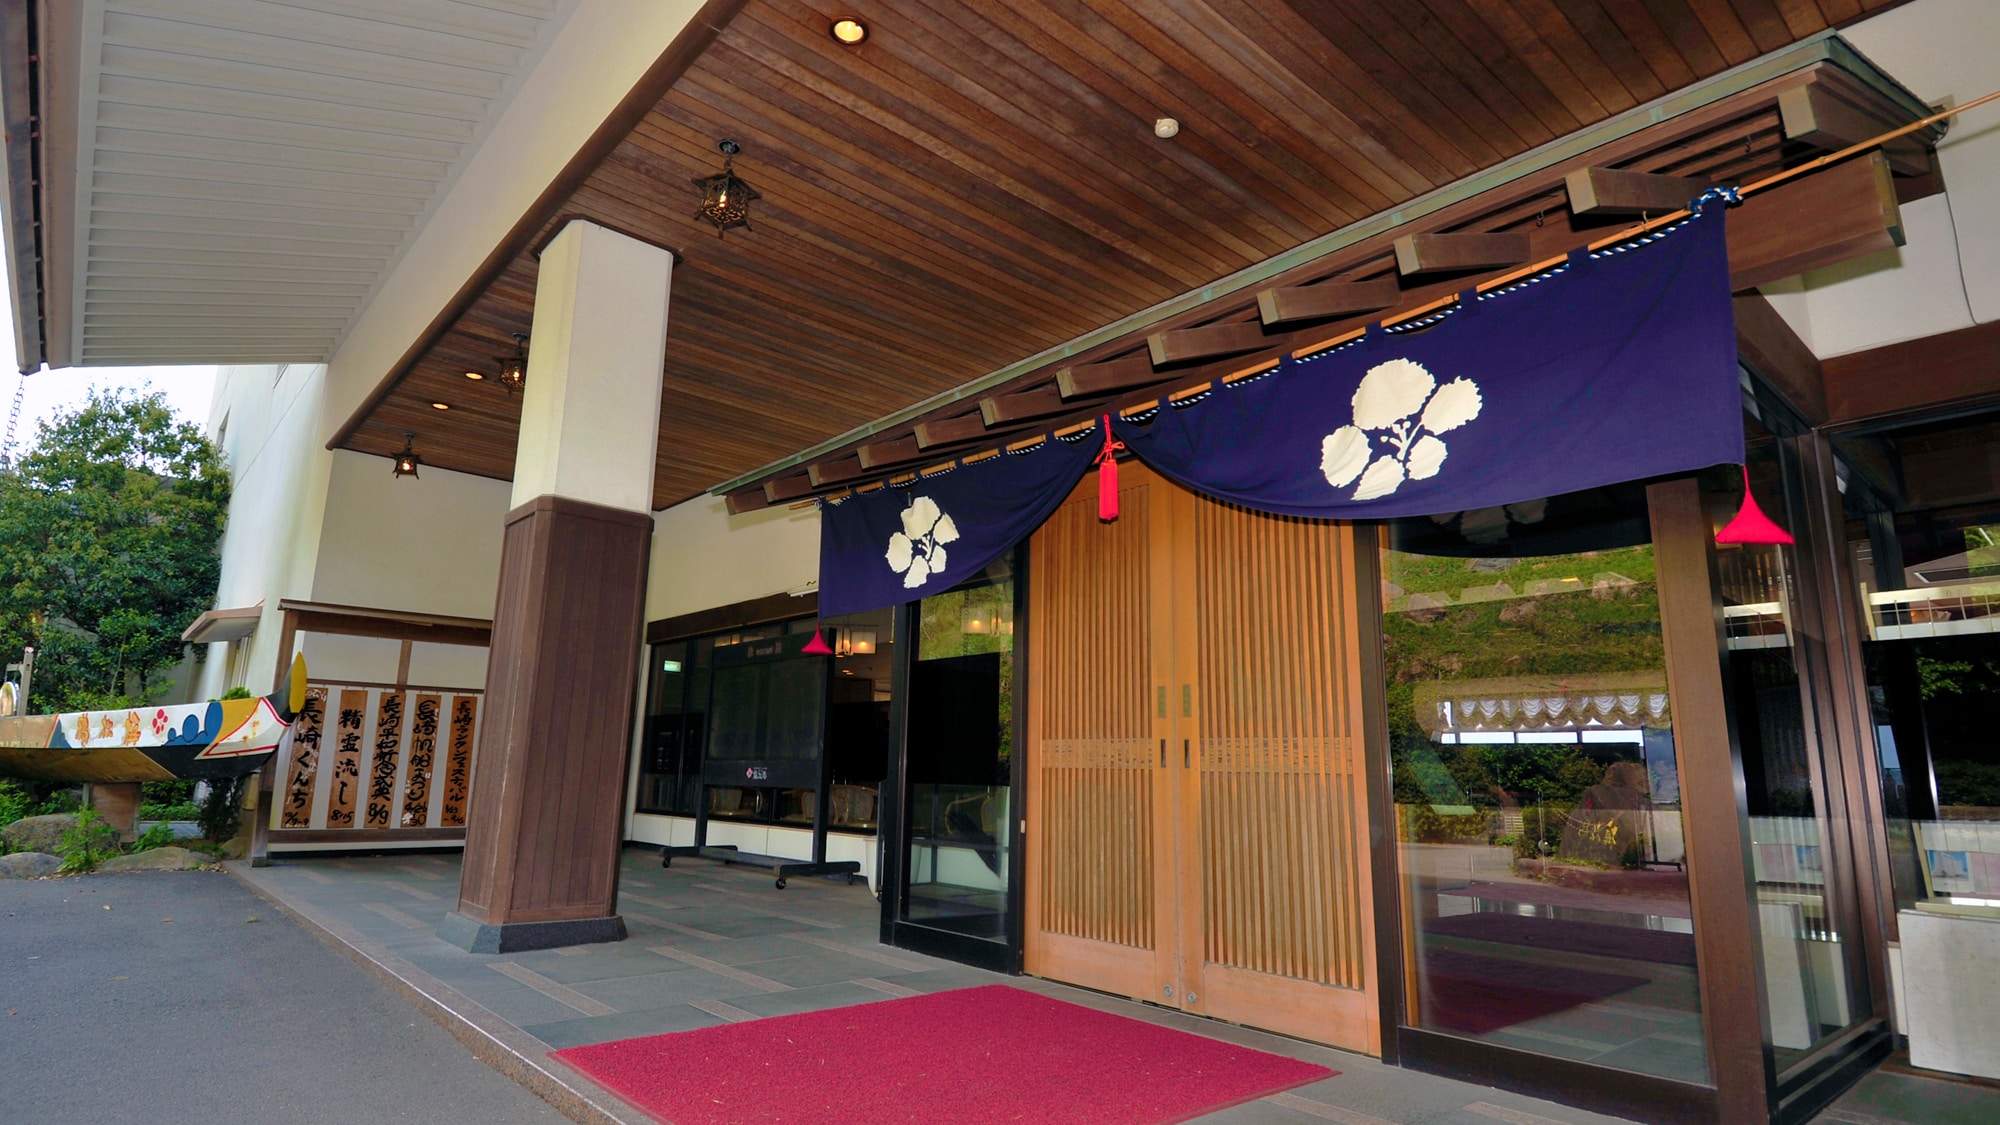 ● Pintu masuk depan bergaya Jepang. Aula adalah penginapan fungsional yang menggabungkan gaya Jepang dan Barat.